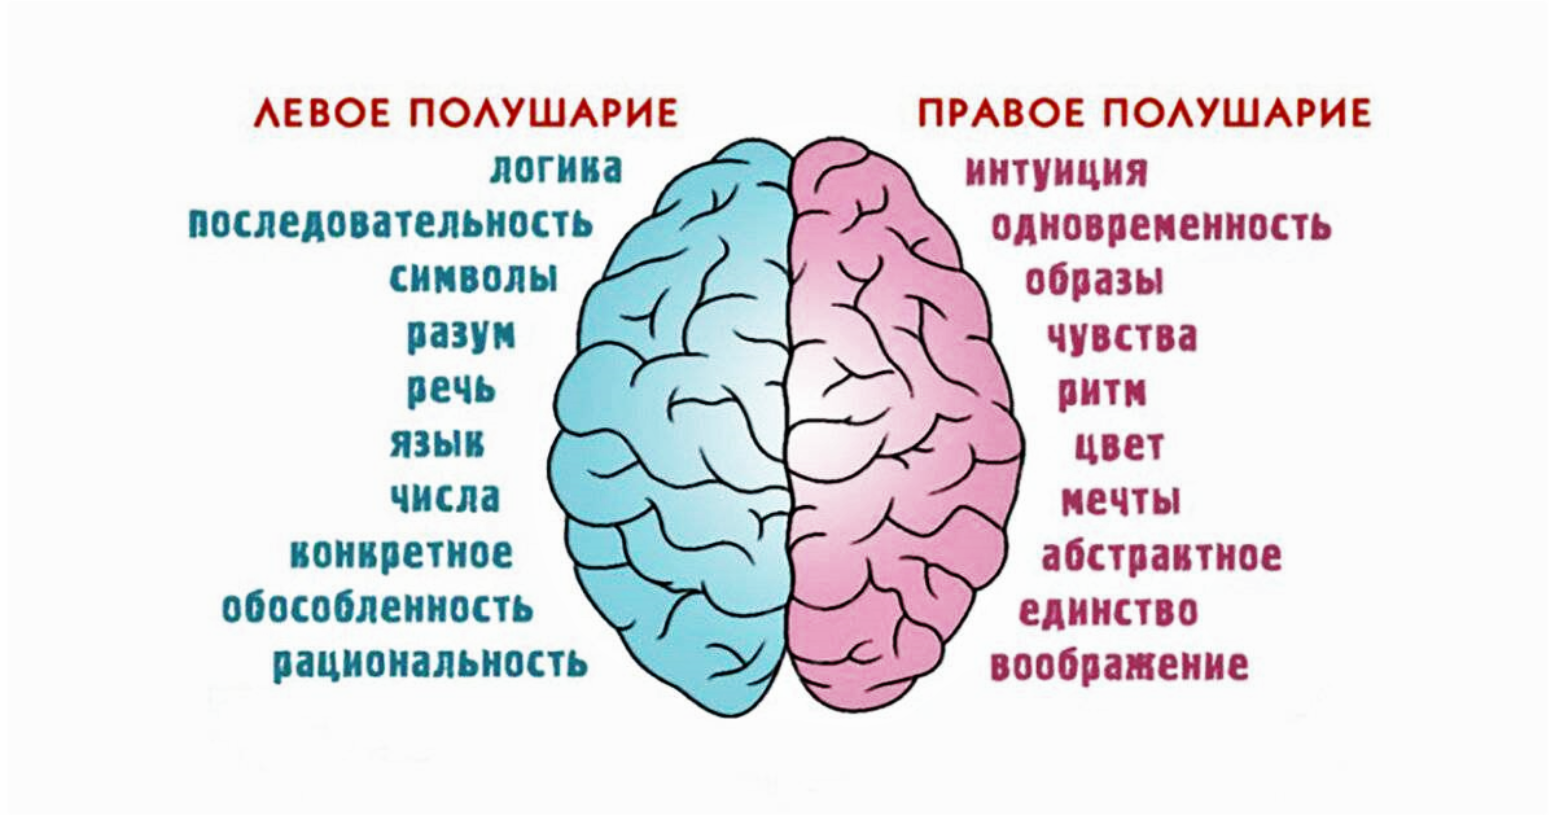 Сила сжимающая полушария. Полушария мозга девое т правое. За что отвечает правое полушарие. За что отвечают полушария головного мозга человека левое и правое. За какие процессы головного мозга отвечает правое полушарие.